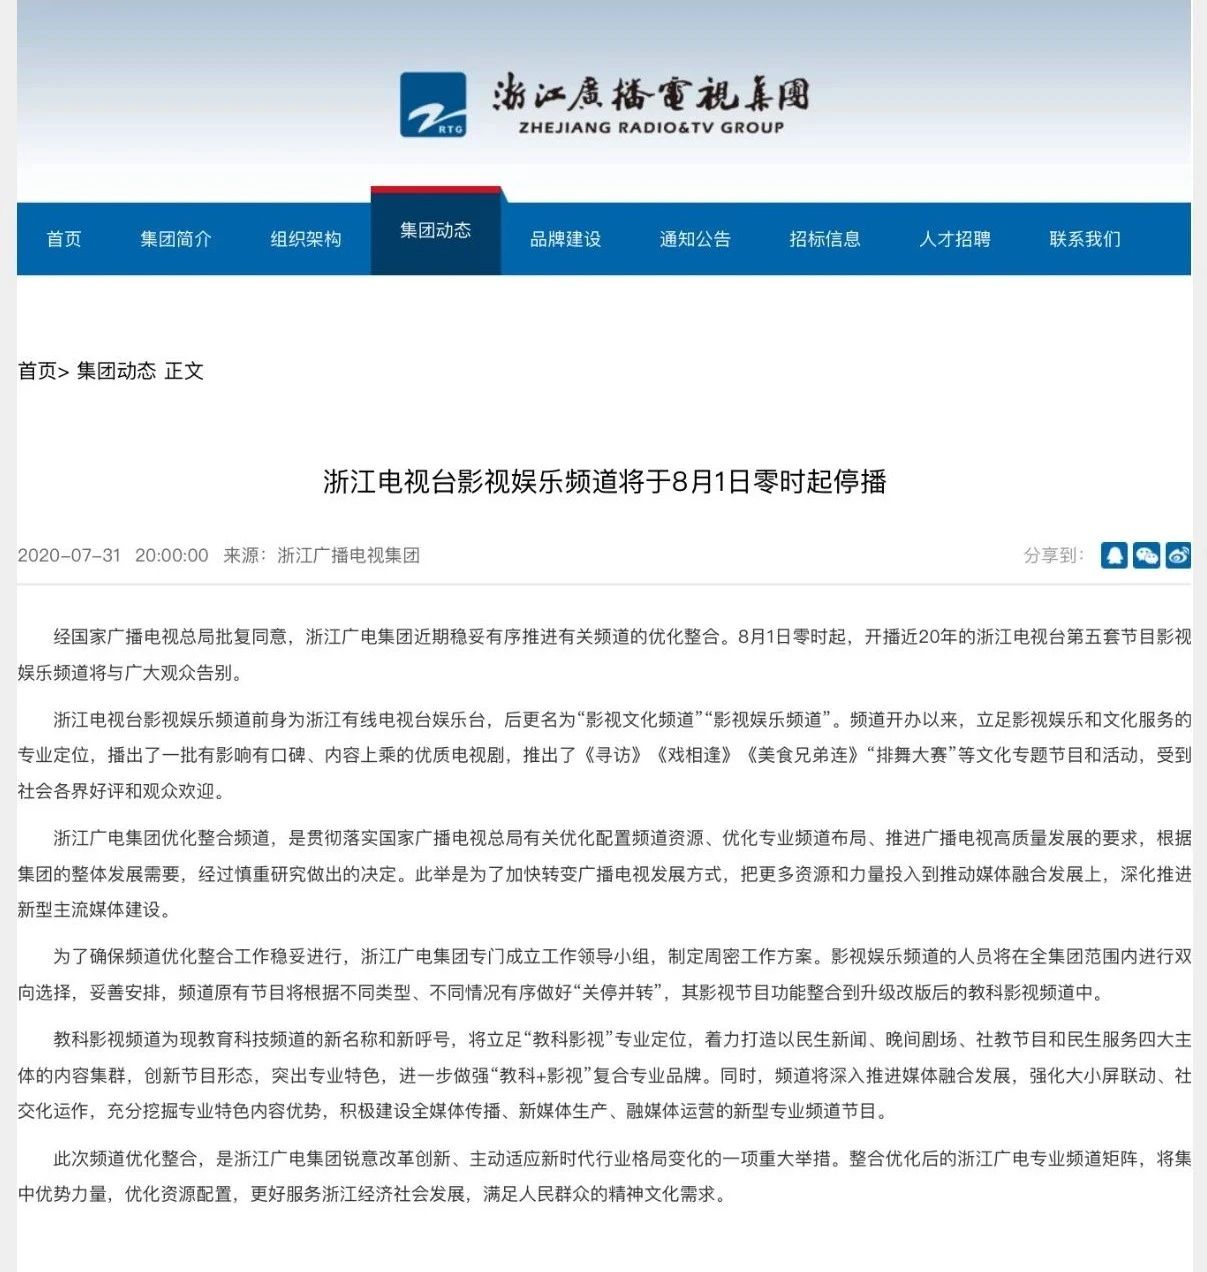 广电总局:2022年已批准撤销19个频道频率